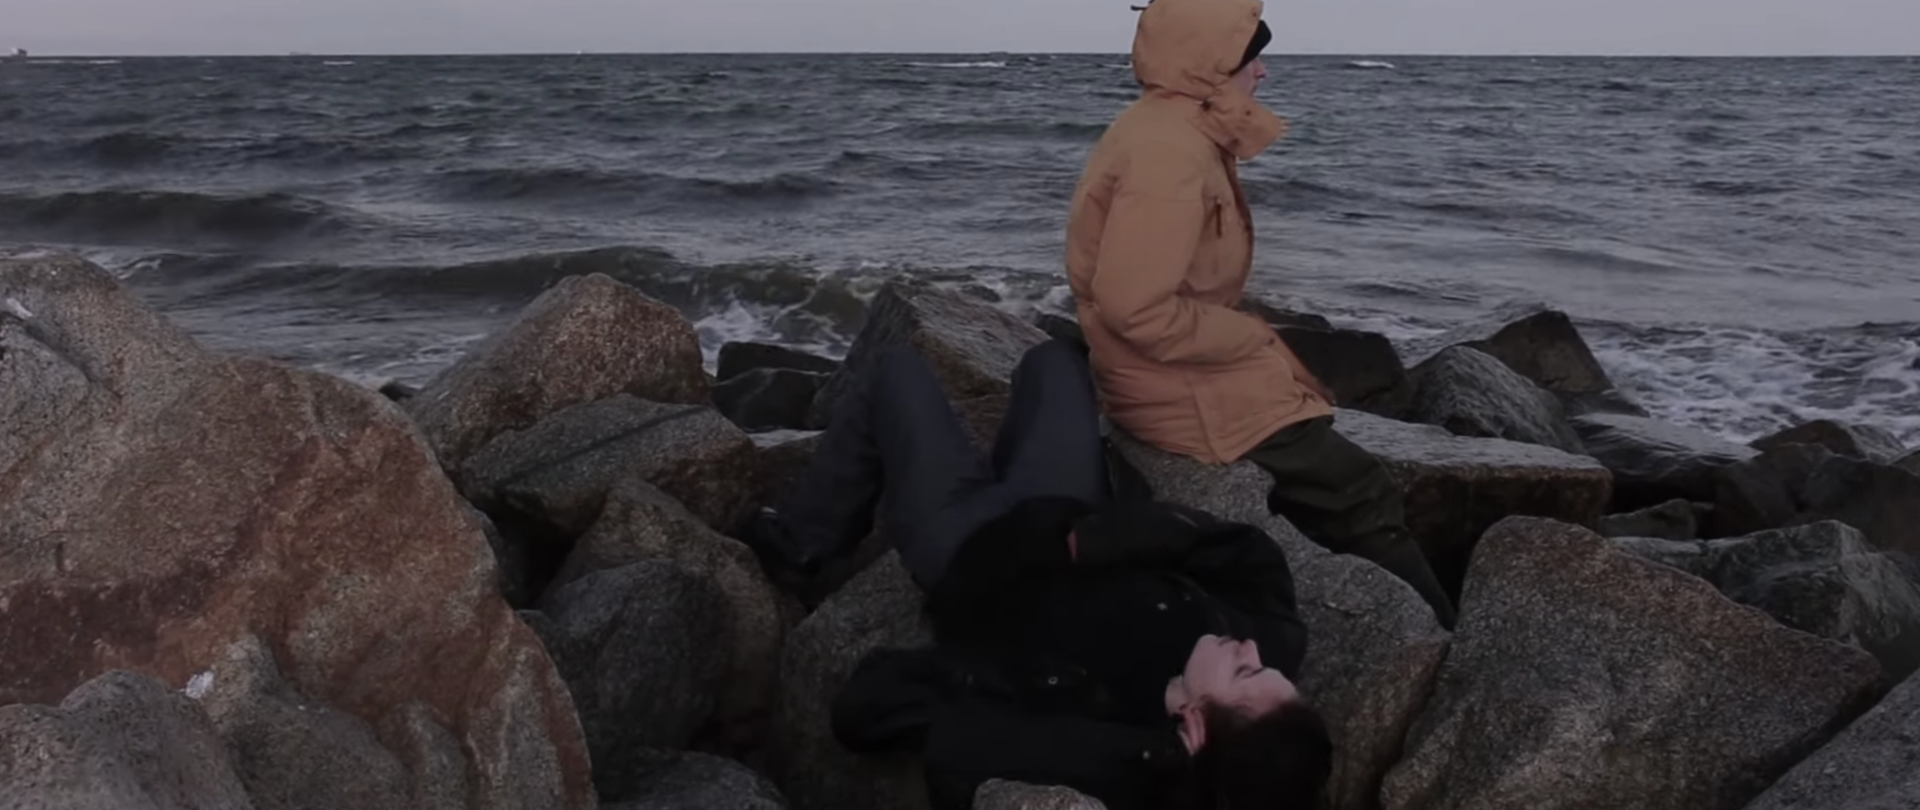 Kadr z filmu Nereida. Dwie postaci na kamienistym / skalistym brzegu morskim.